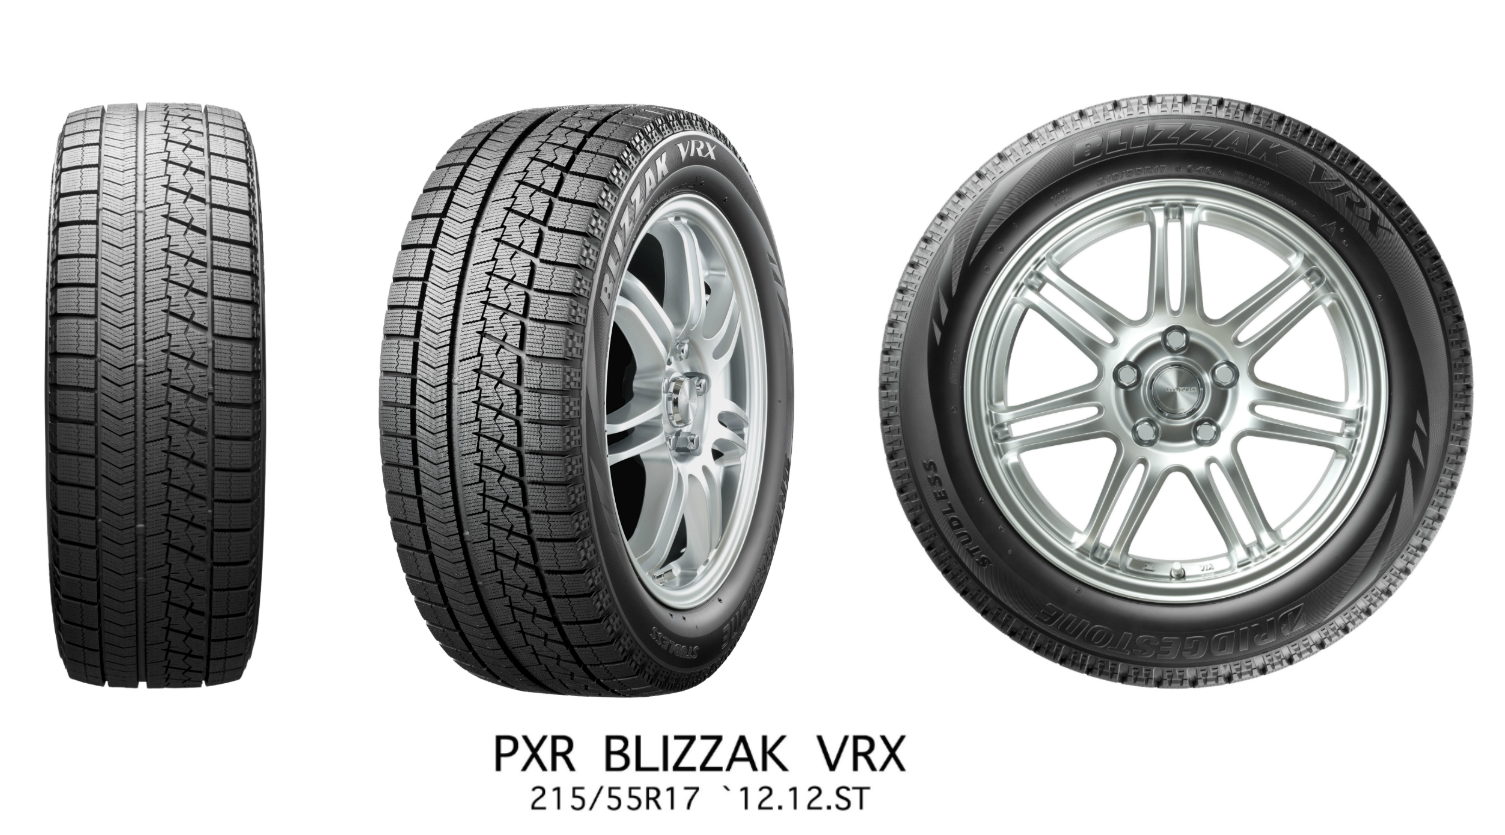 Зимові шини Bridgestone Blizzak VRX 245/45 R19 98S 